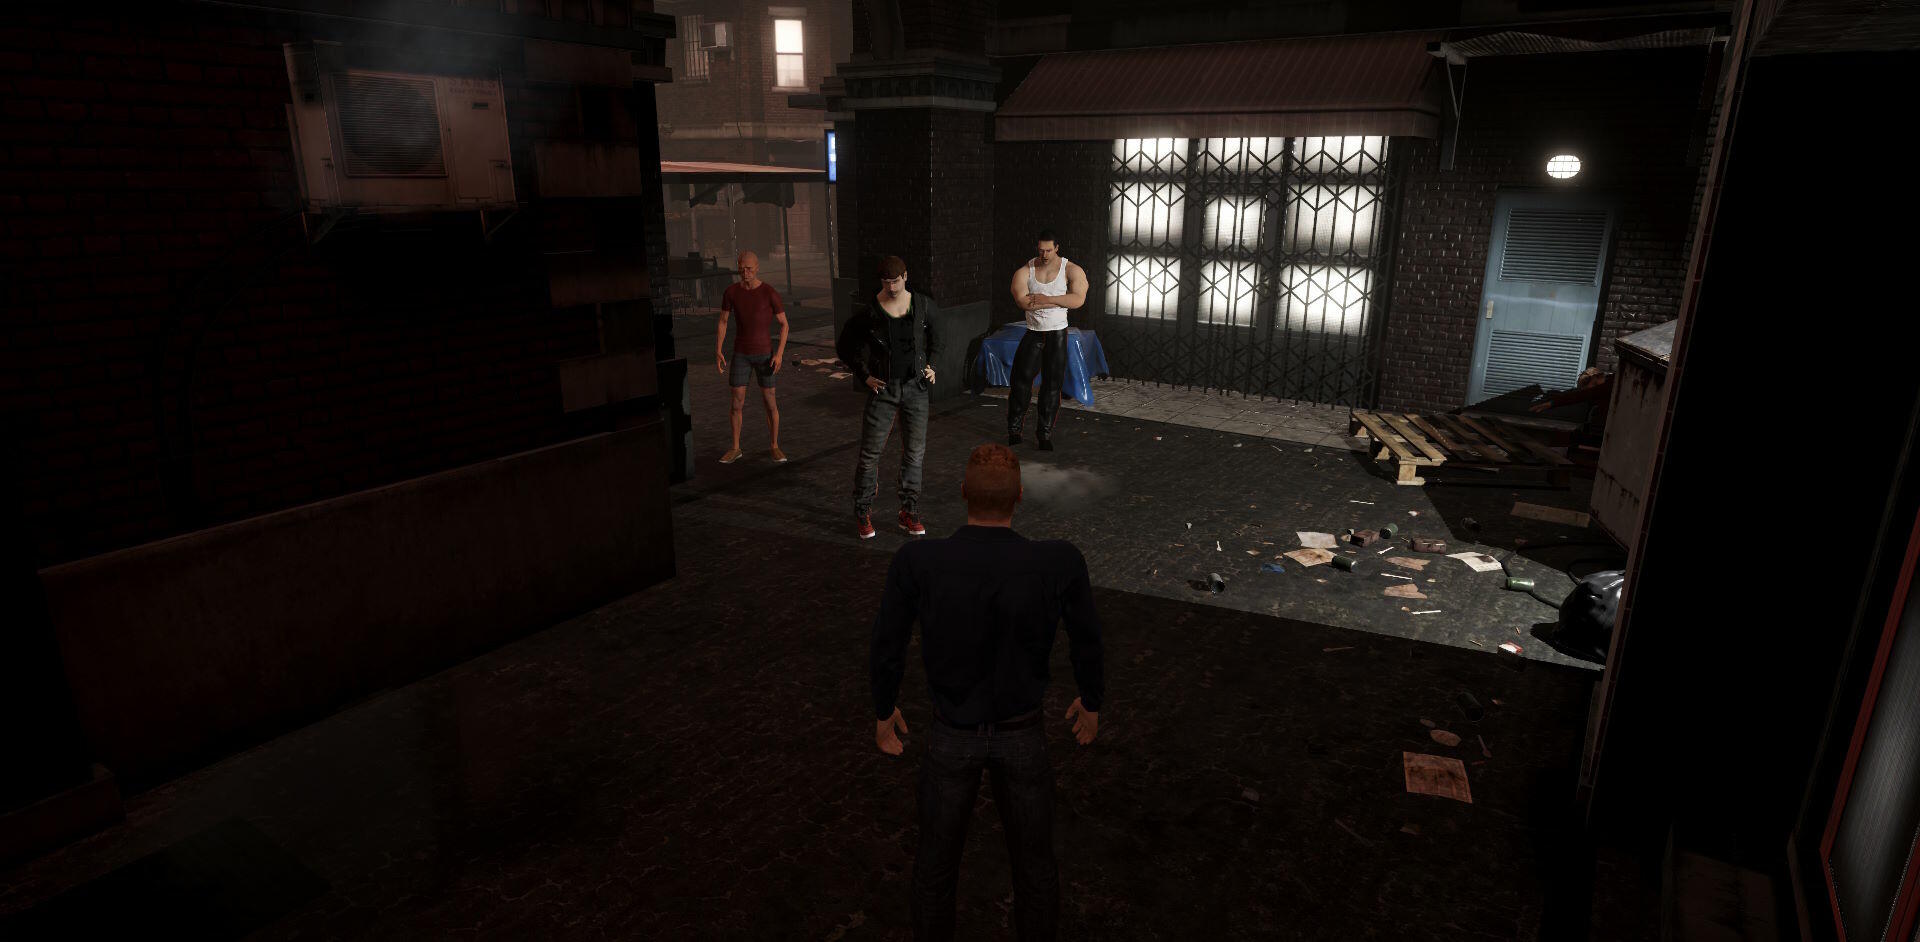 Slum Dweller screenshot game